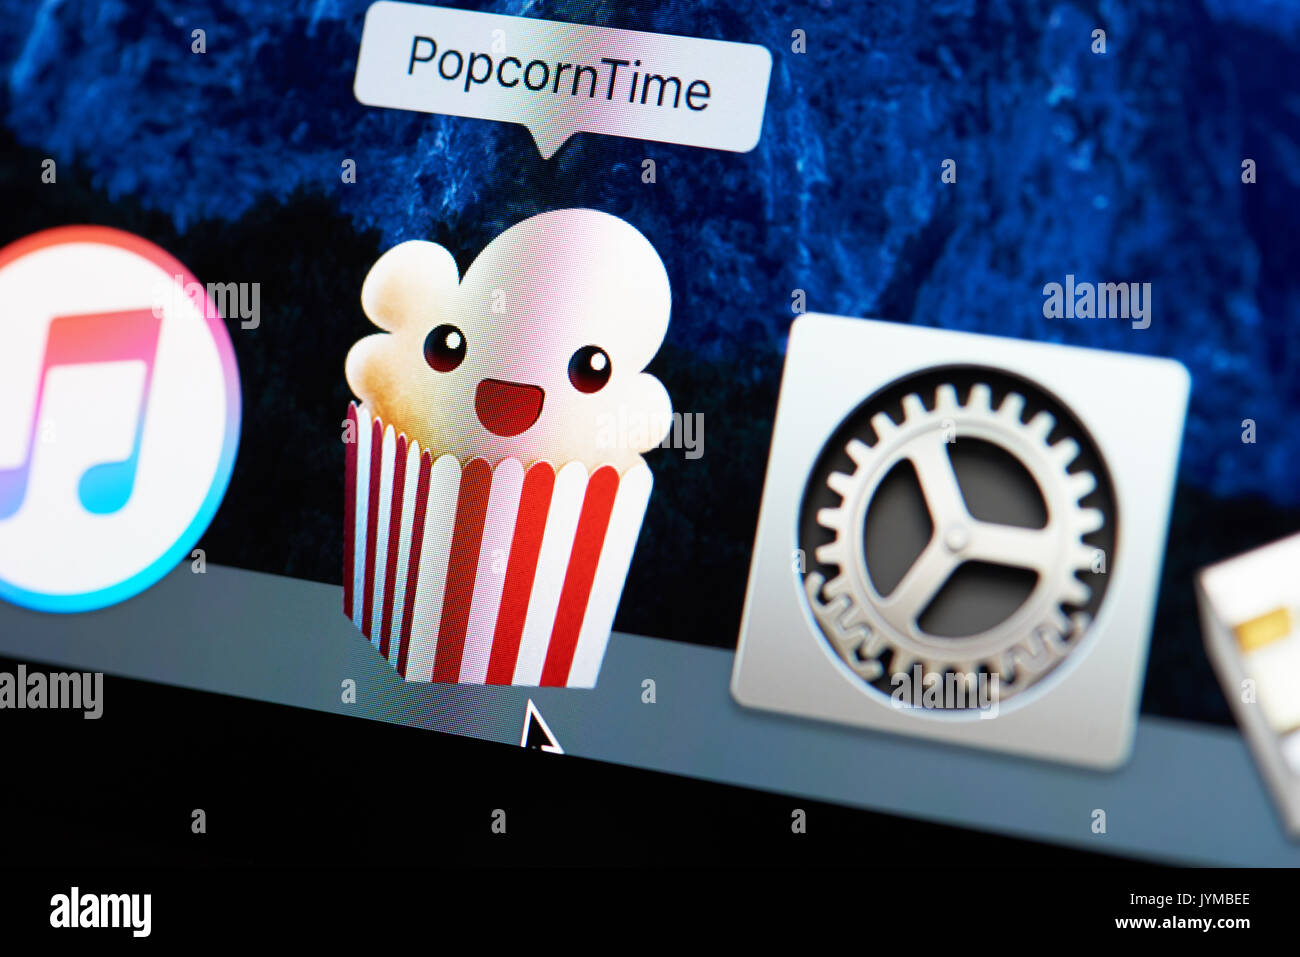 New York, USA - Le 18 août 2017:film Popcorntime service sur un écran d'ordinateur portable de près. Regarder des films sur demande popcorntime Banque D'Images